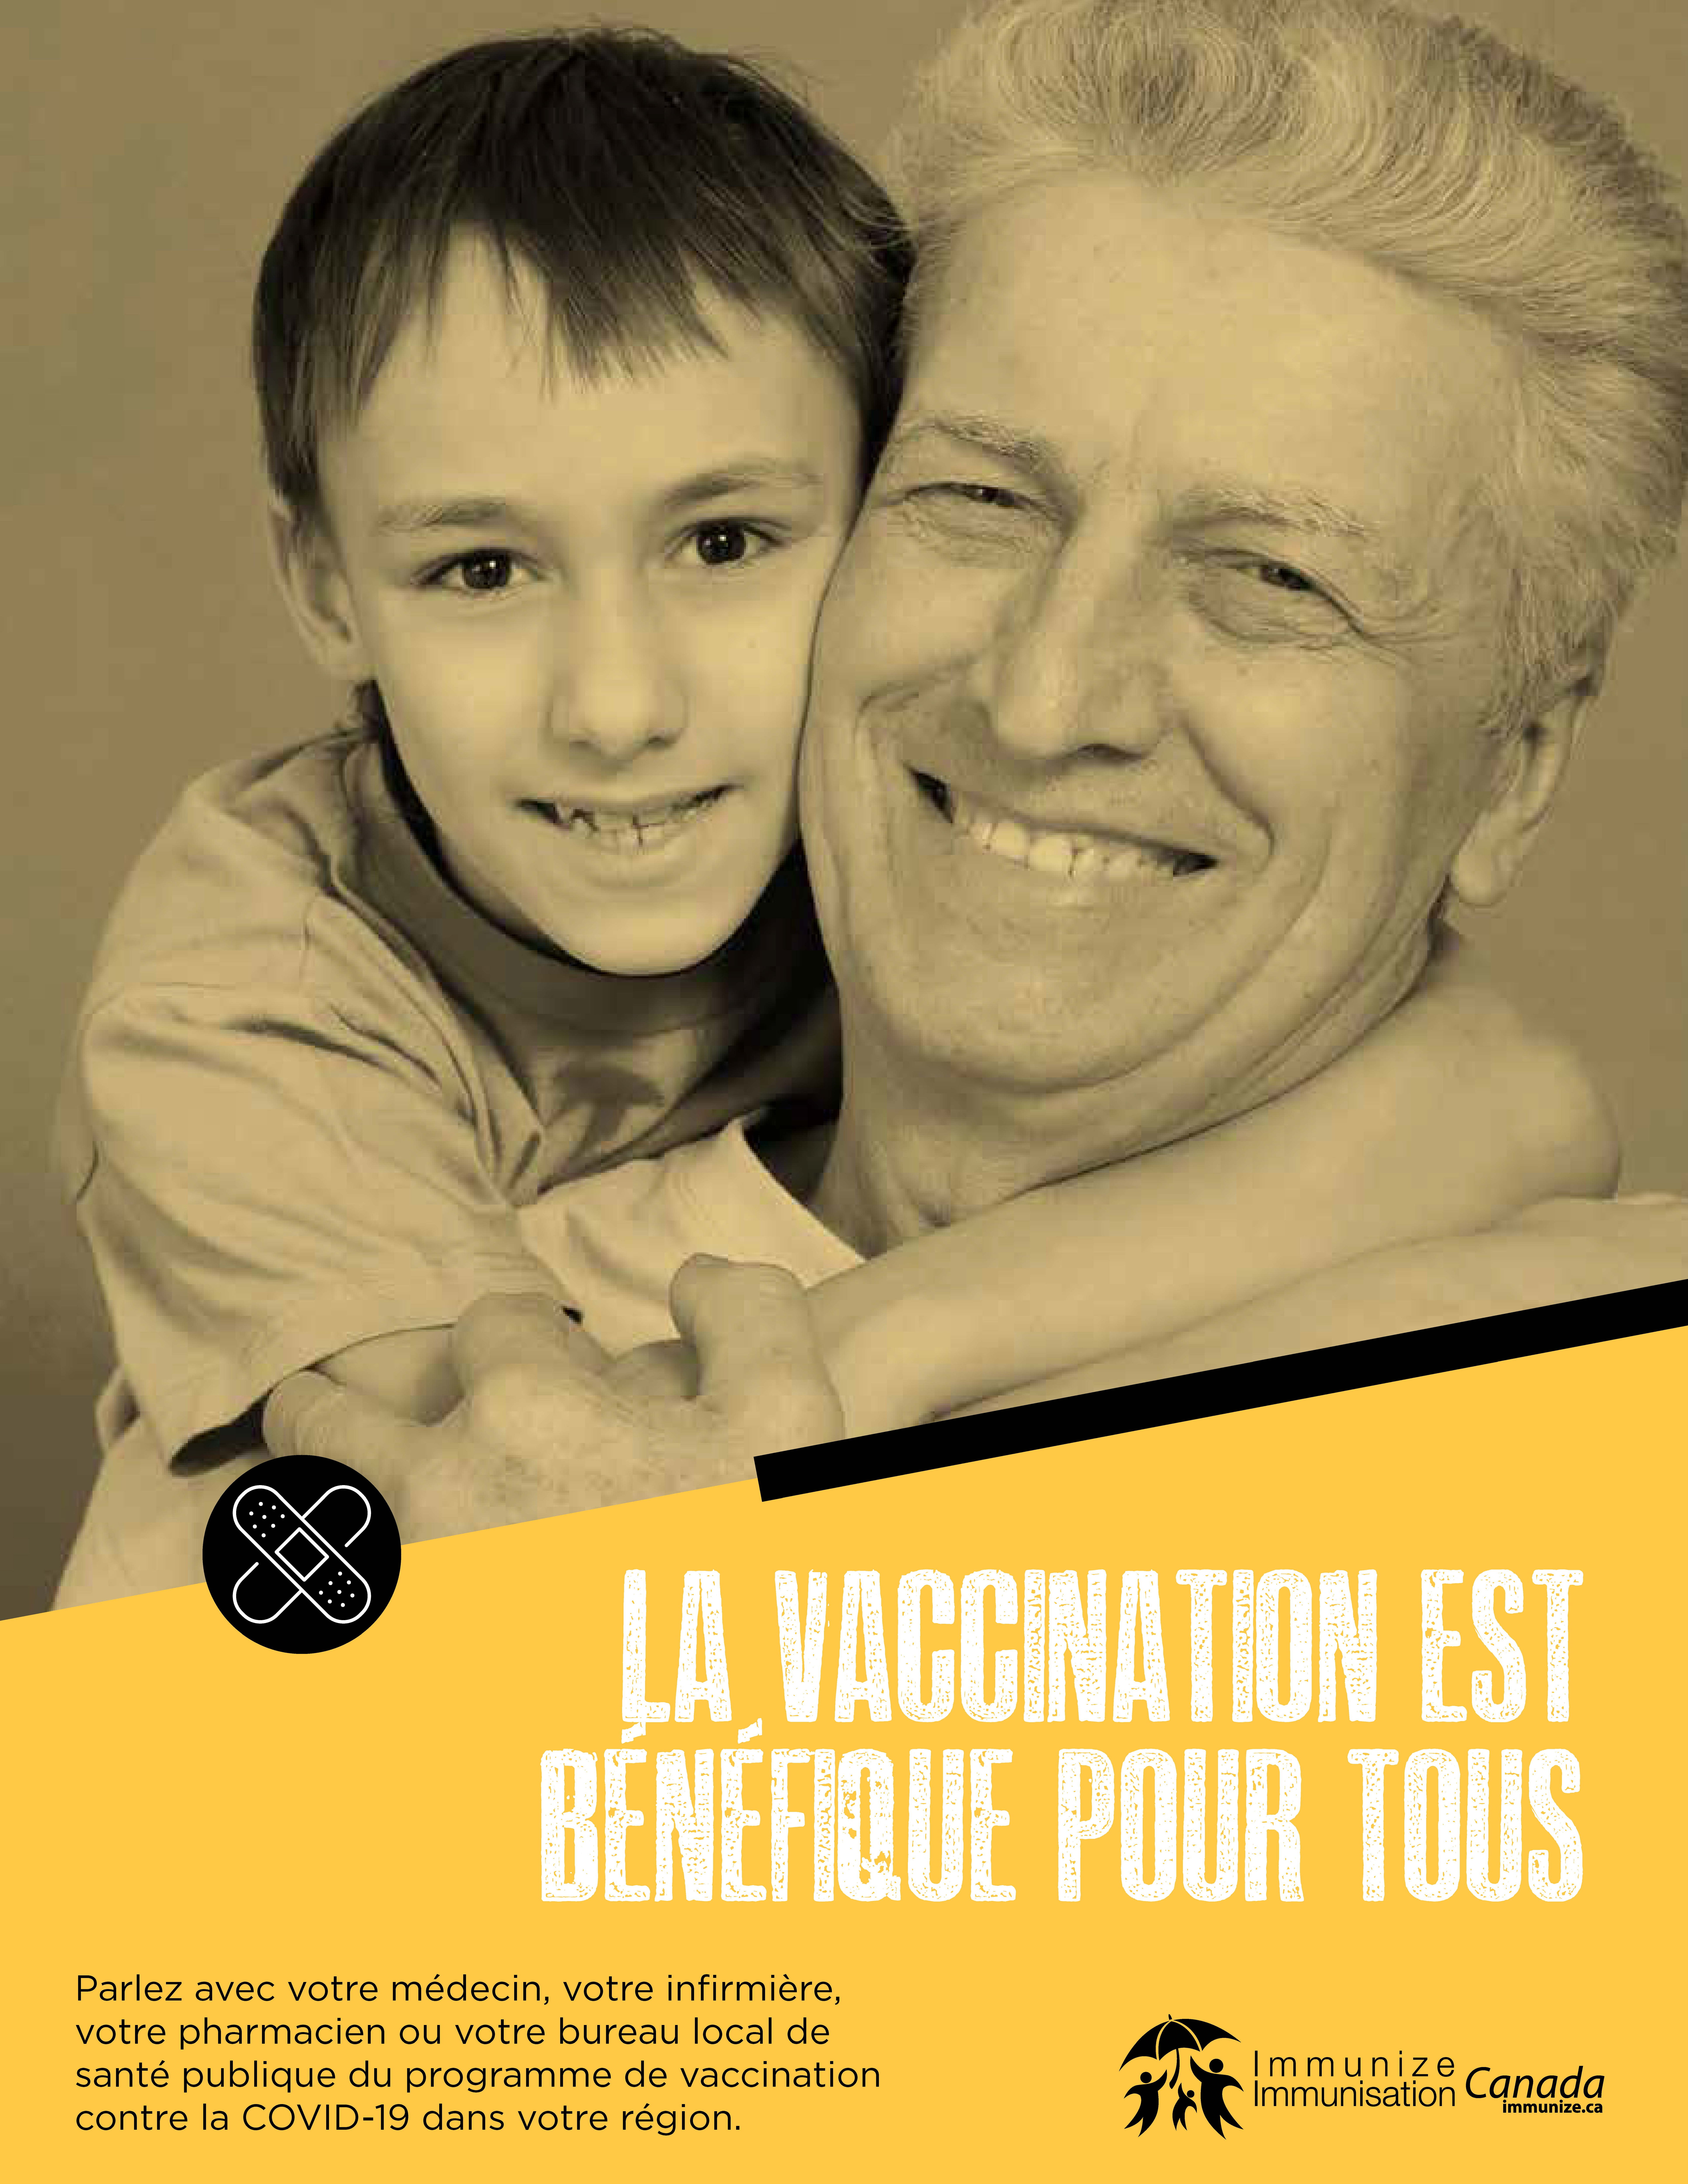 La vaccination est bénéfique pour tous. (COVID-19)